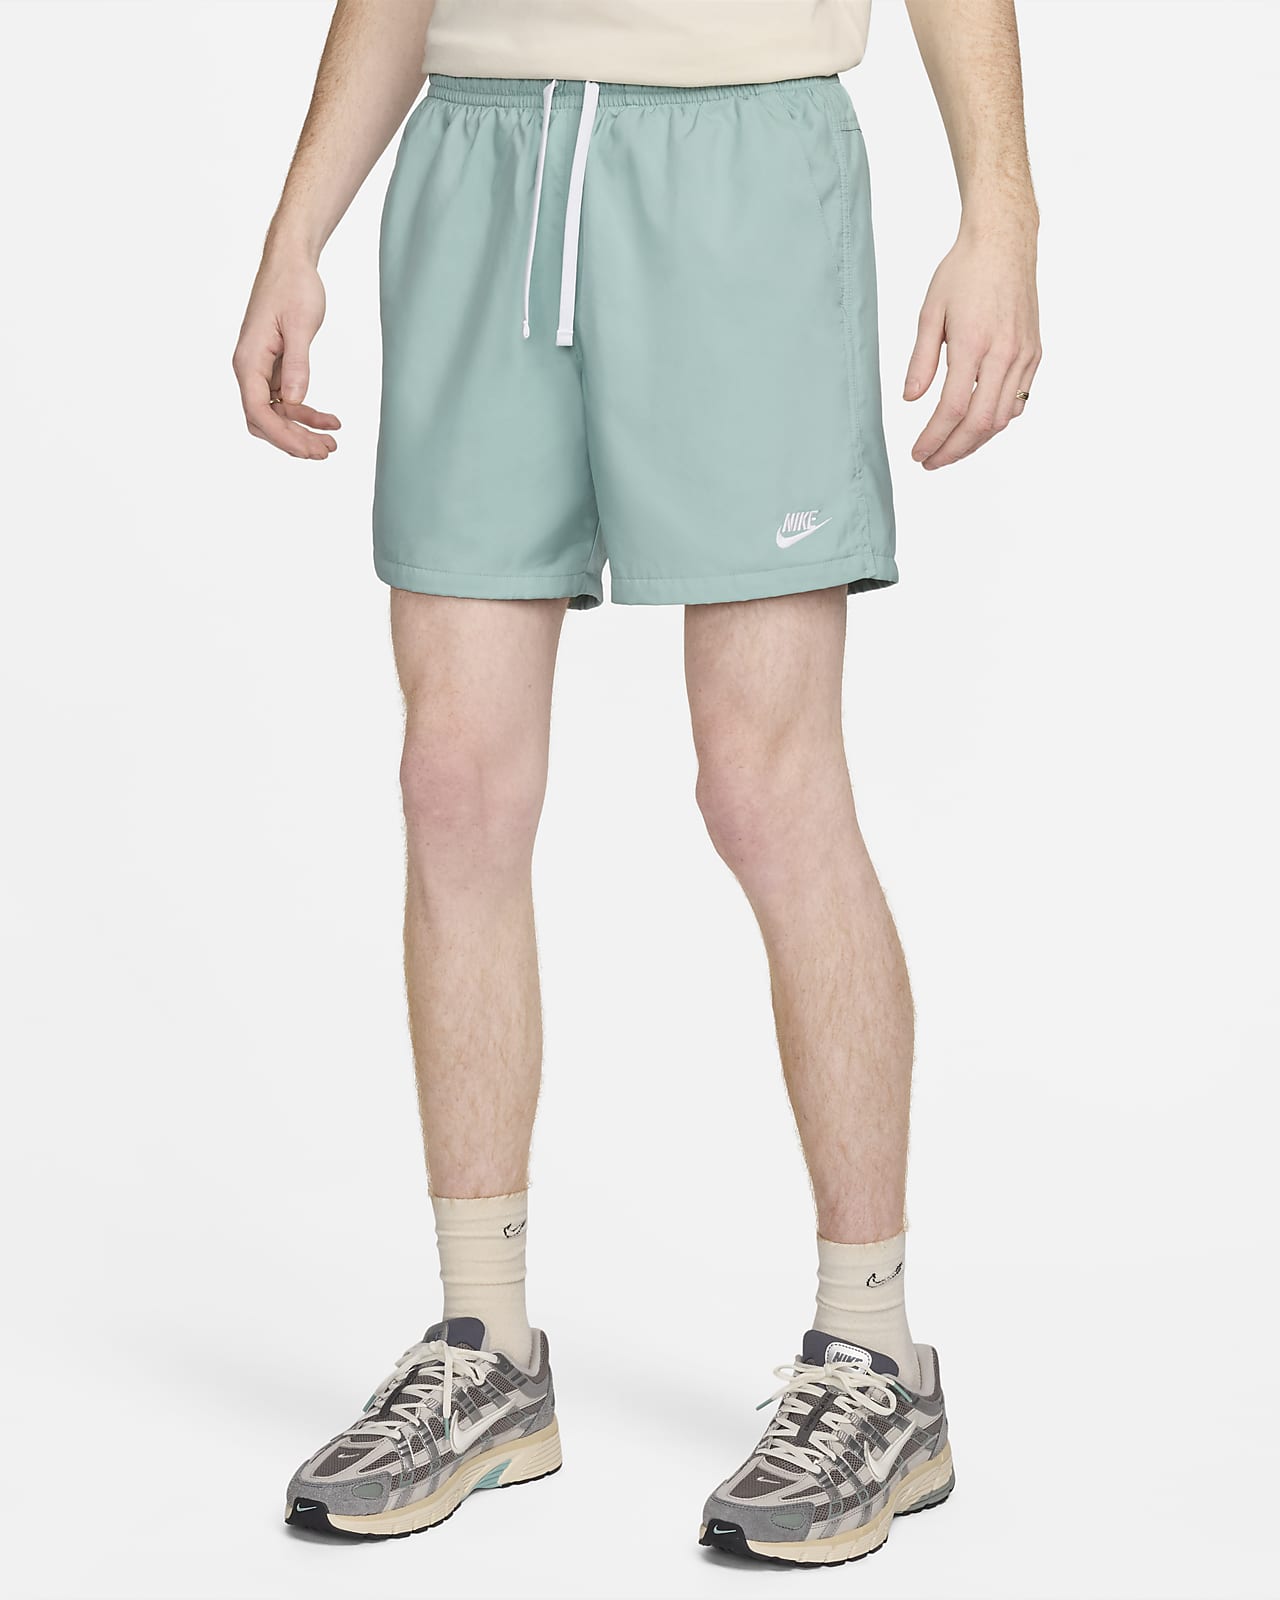 Nike Sportswear Men's Woven Flow Shorts. Nike FI